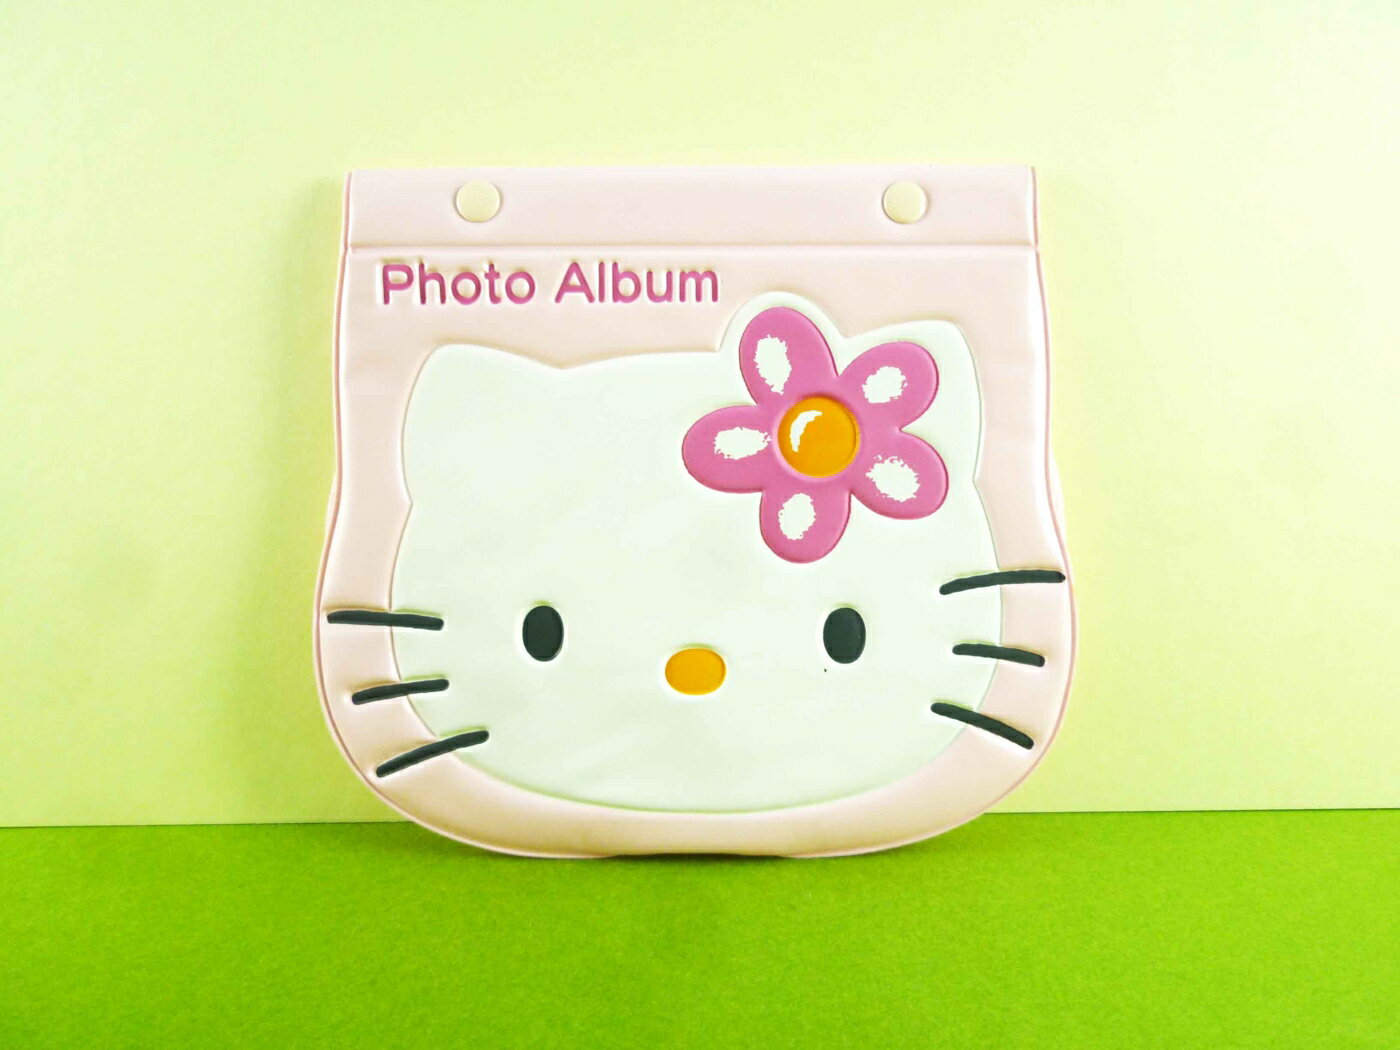 【震撼精品百貨】Hello Kitty 凱蒂貓 3*5相本 粉大頭【共1款】 震撼日式精品百貨